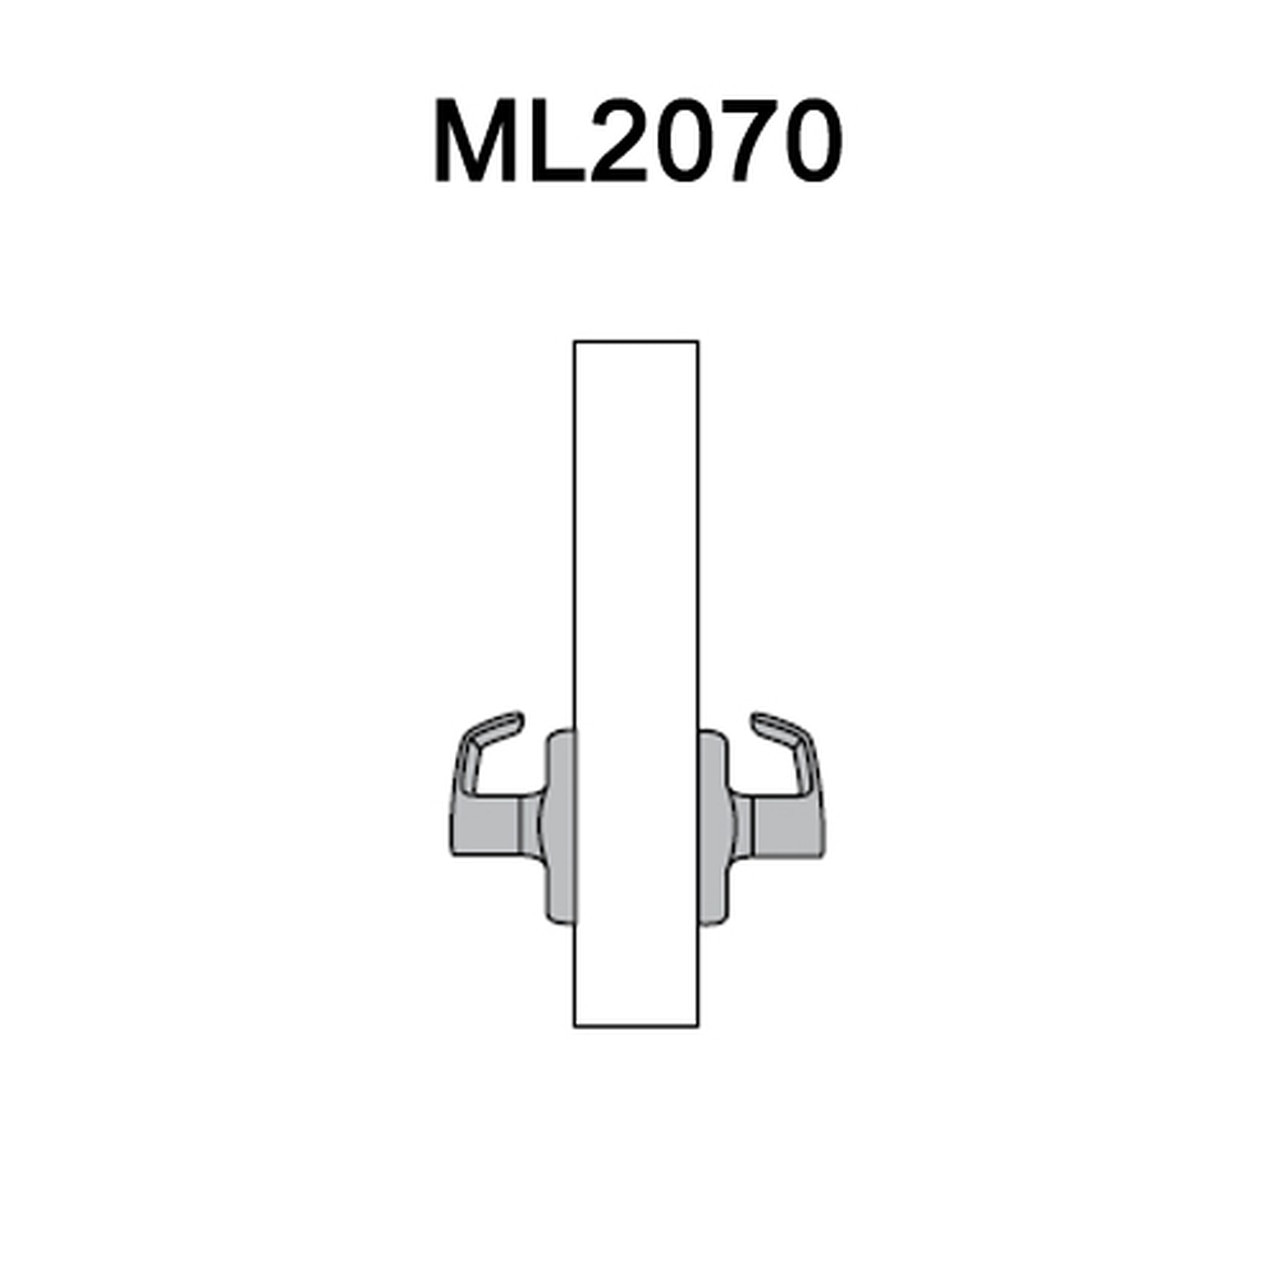 ML2070-RWB-630 Corbin Russwin ML2000 Series Mortise Full Dummy Locksets with Regis Lever in Satin Stainless